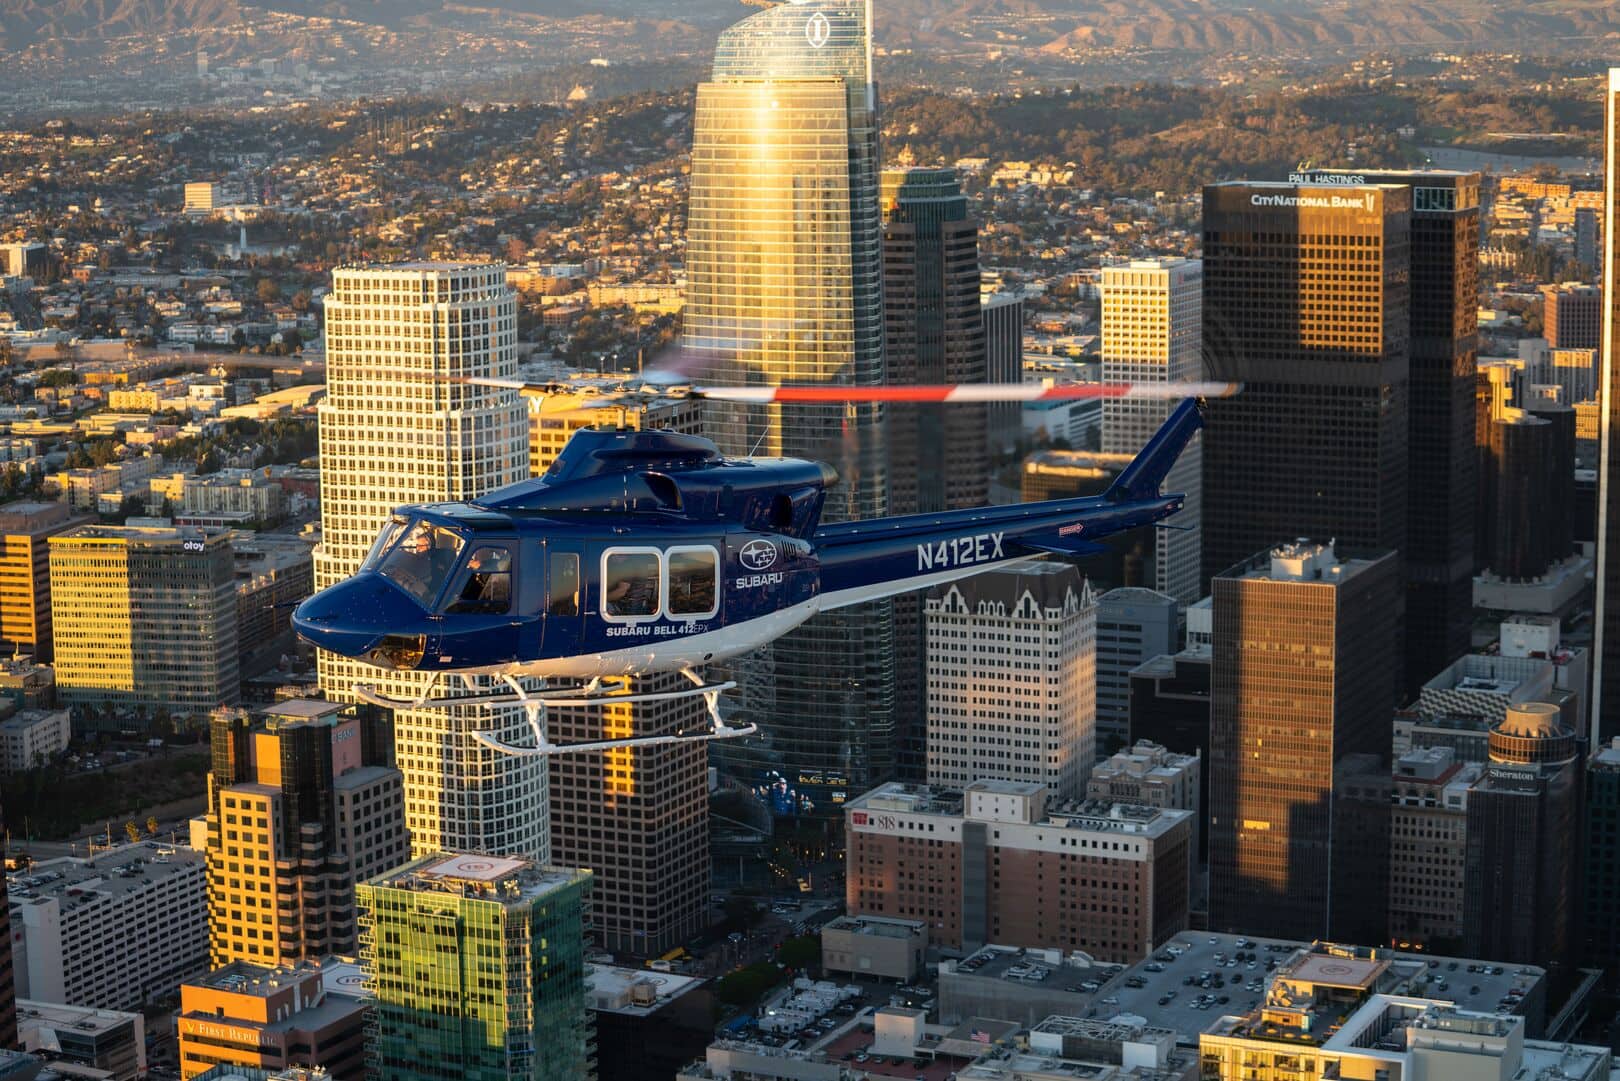 Presentación-Subaru-Bell 412 Expo Los Ángeles 31